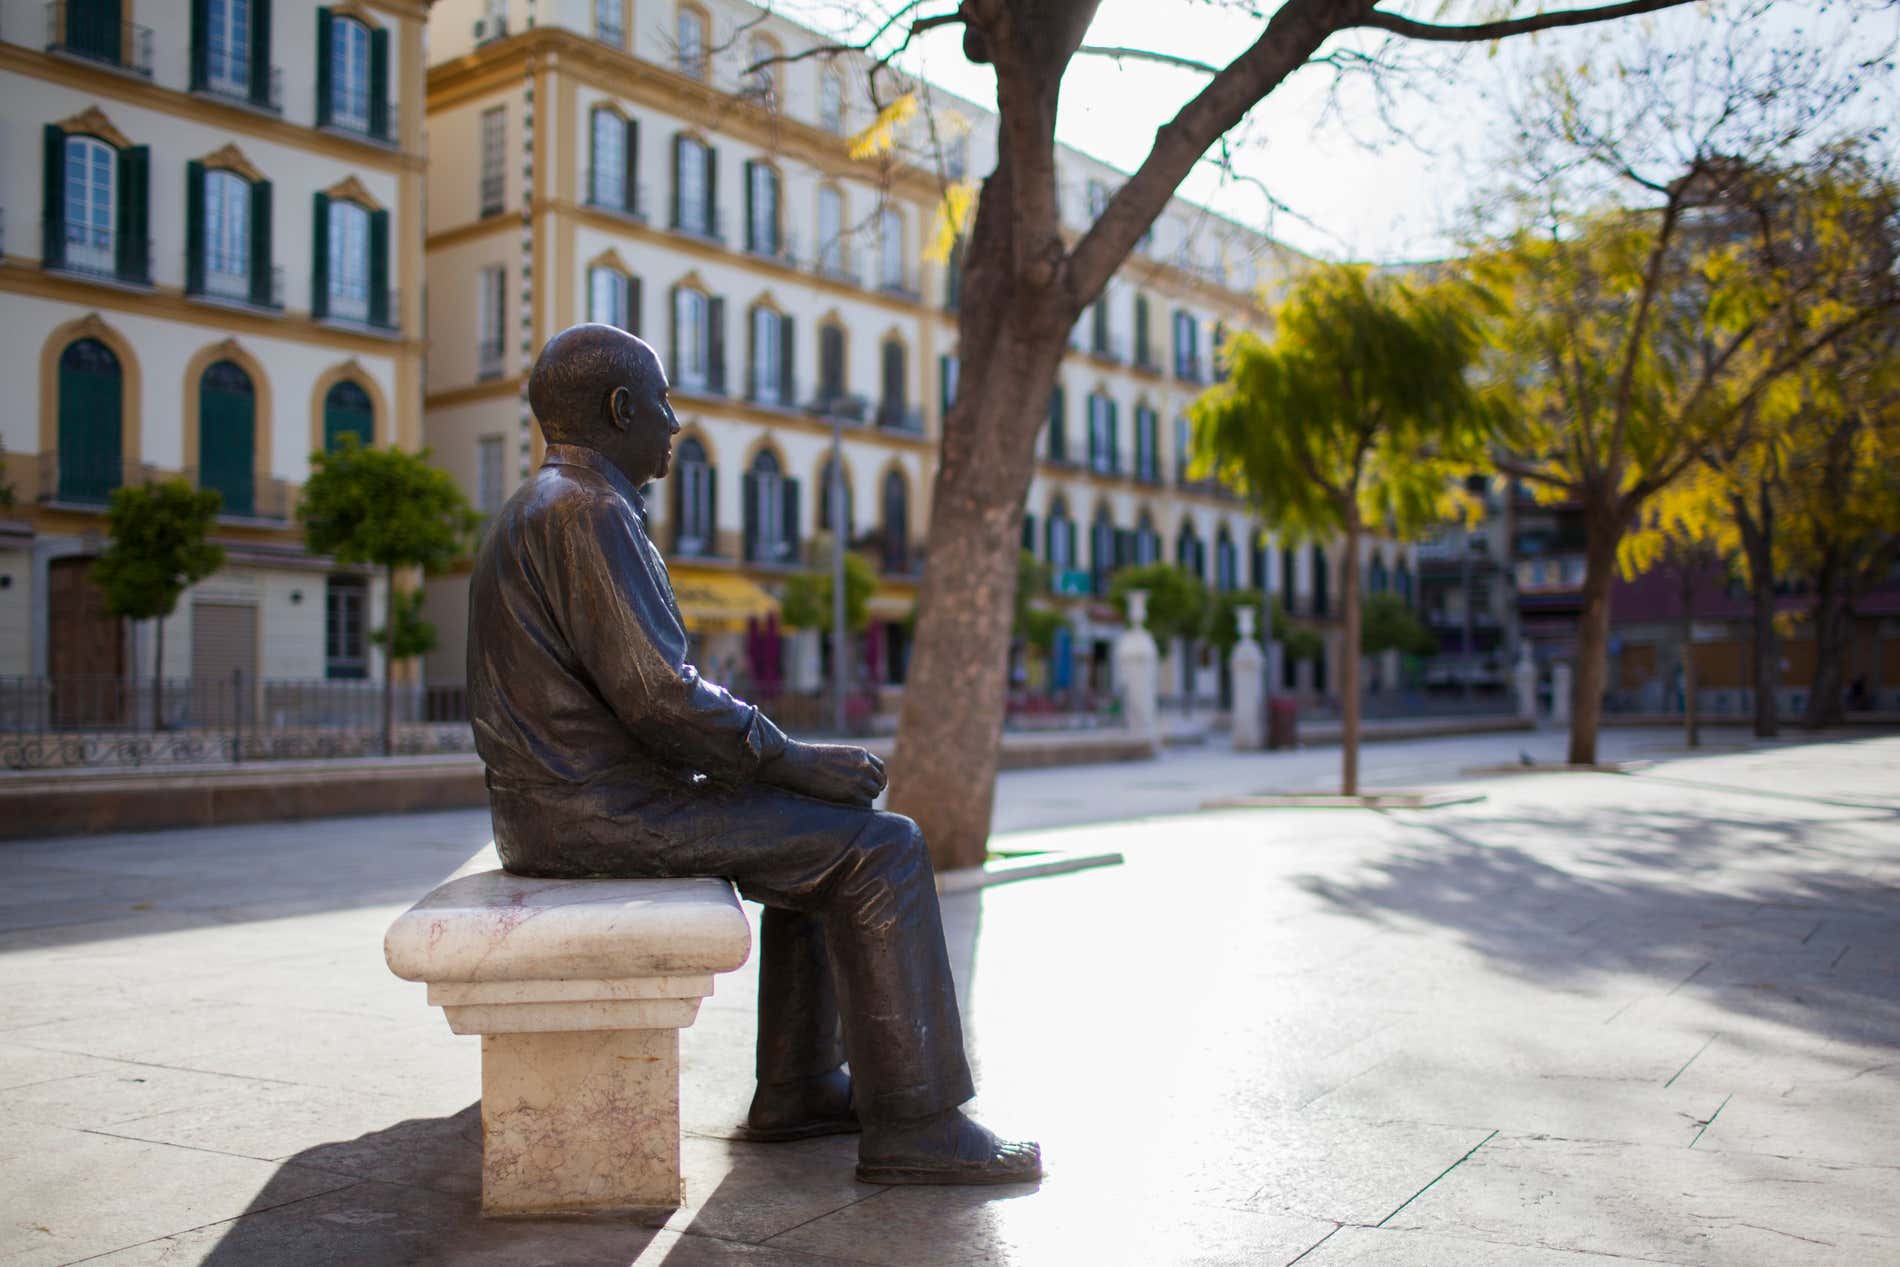 A photo of the statue of Pablo Picasso in Plaza de la Merced in Malaga